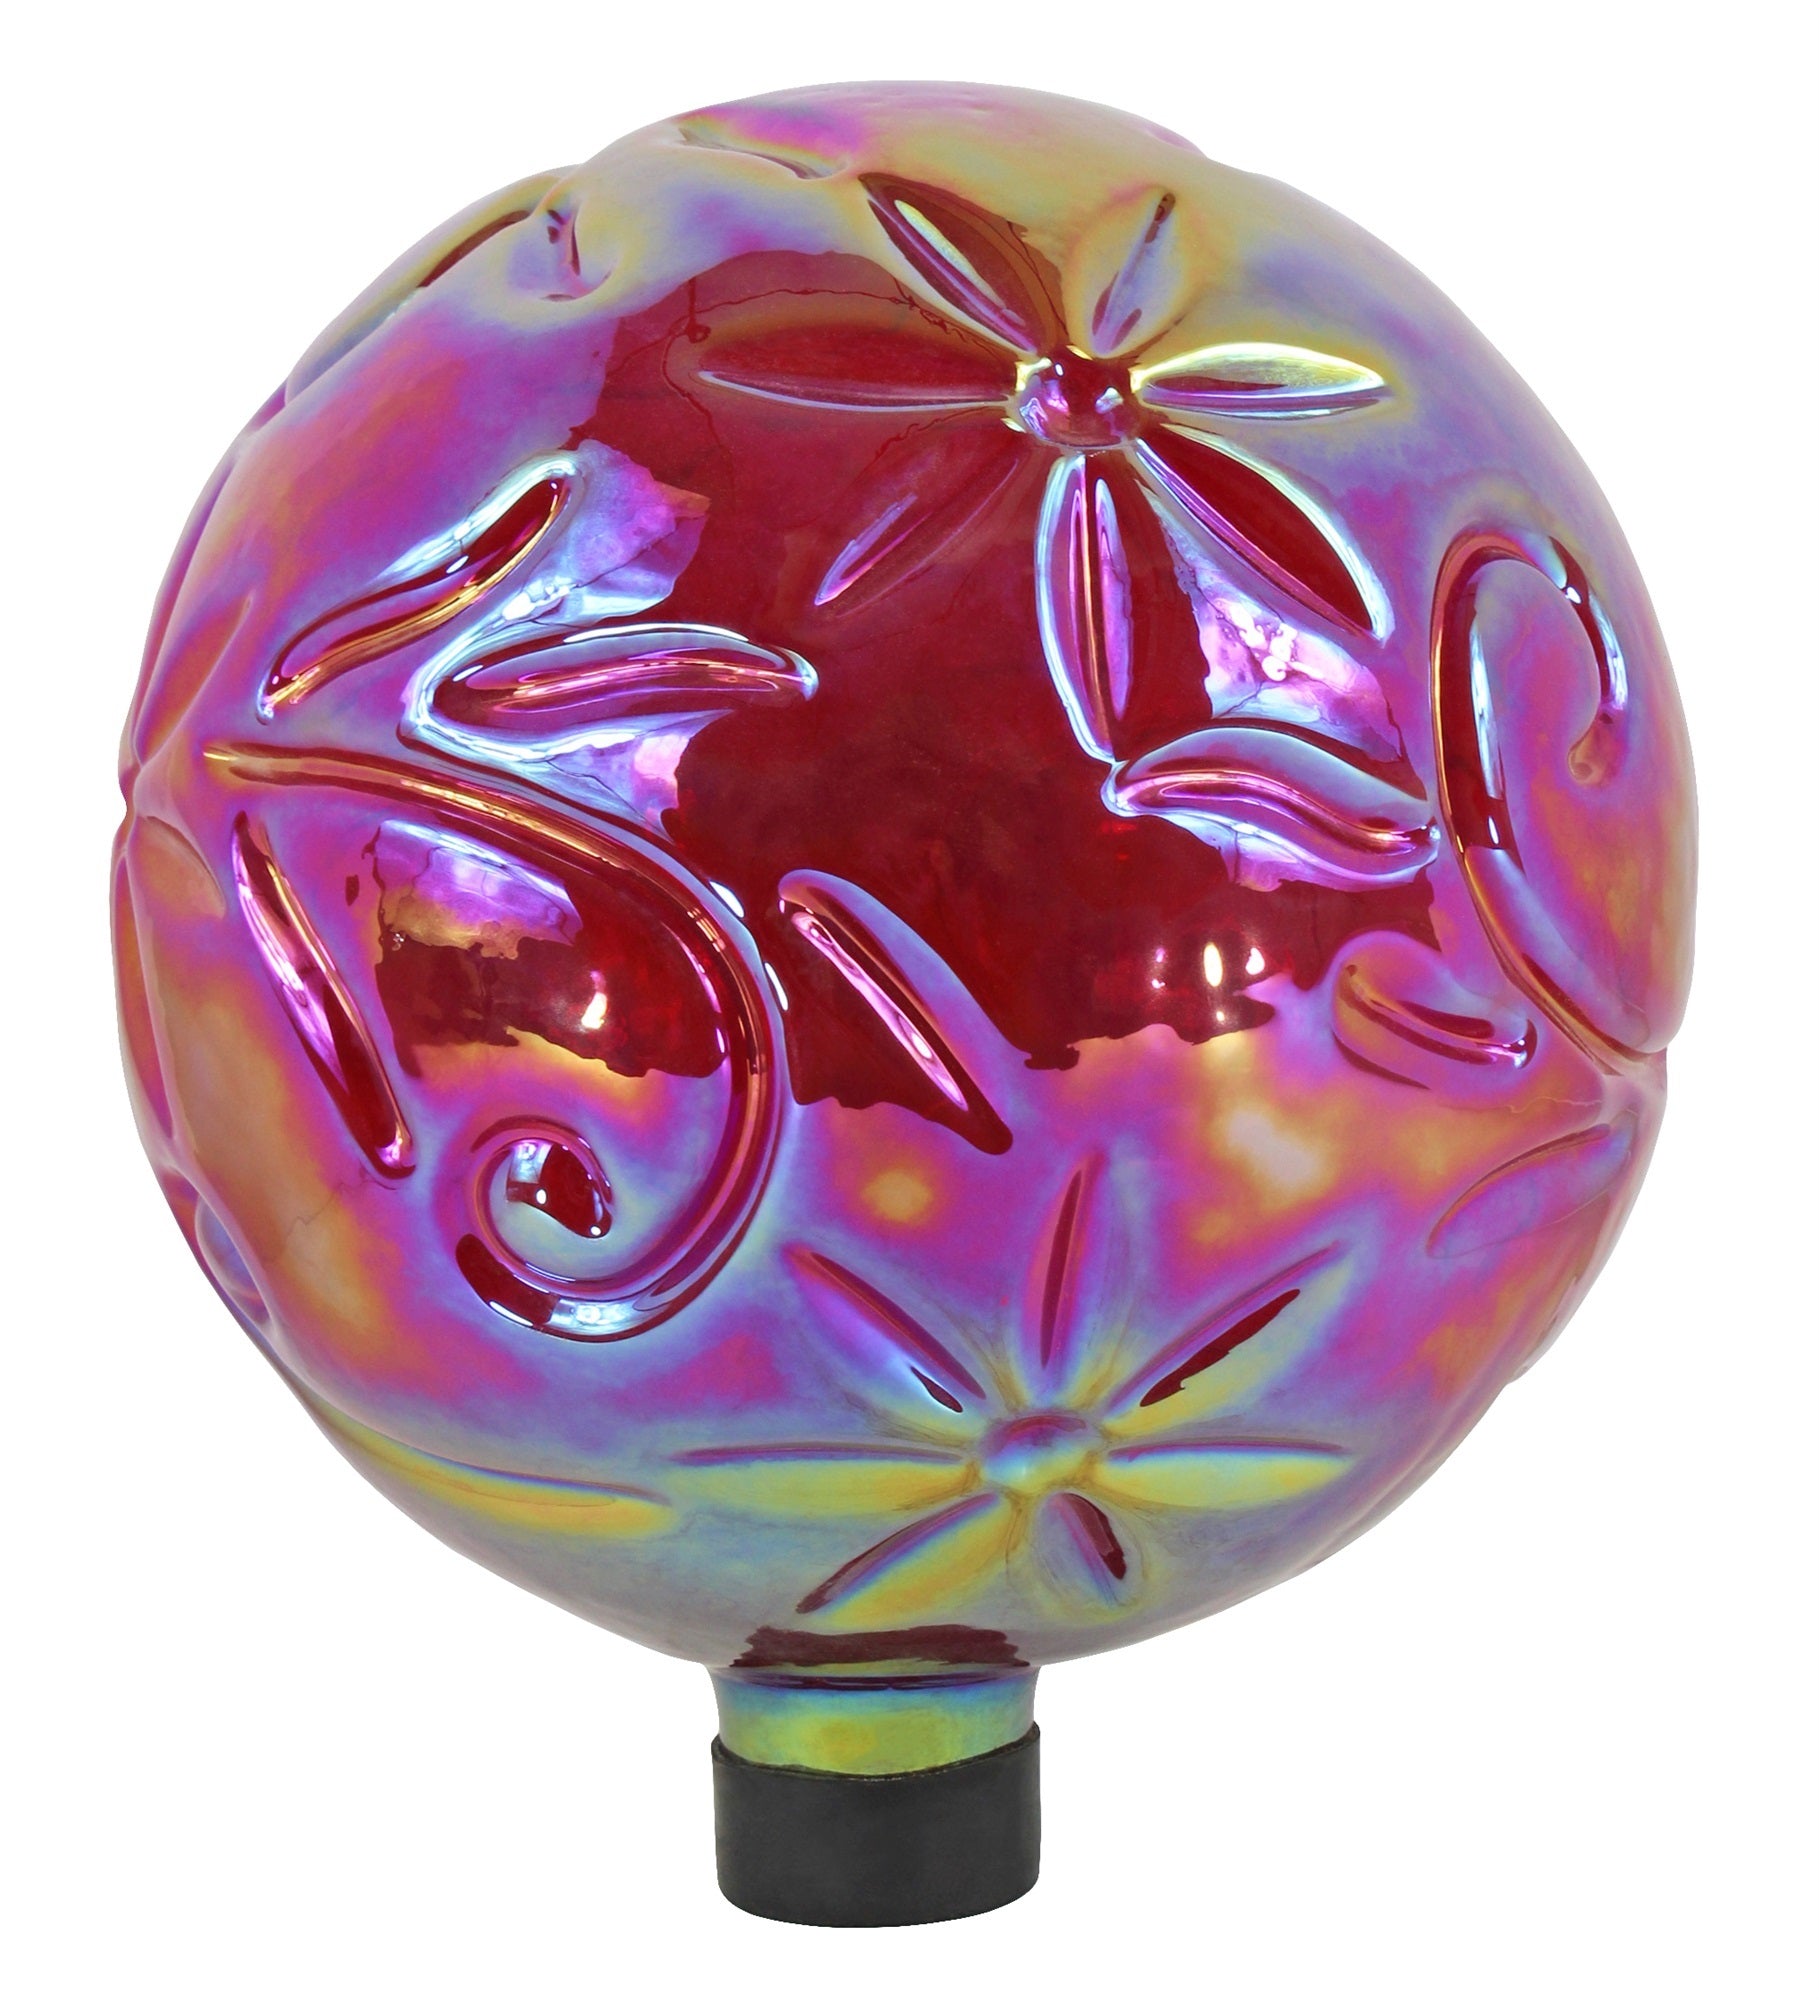 Gardener's Select Red Flower Glass Gazing Globe, 10